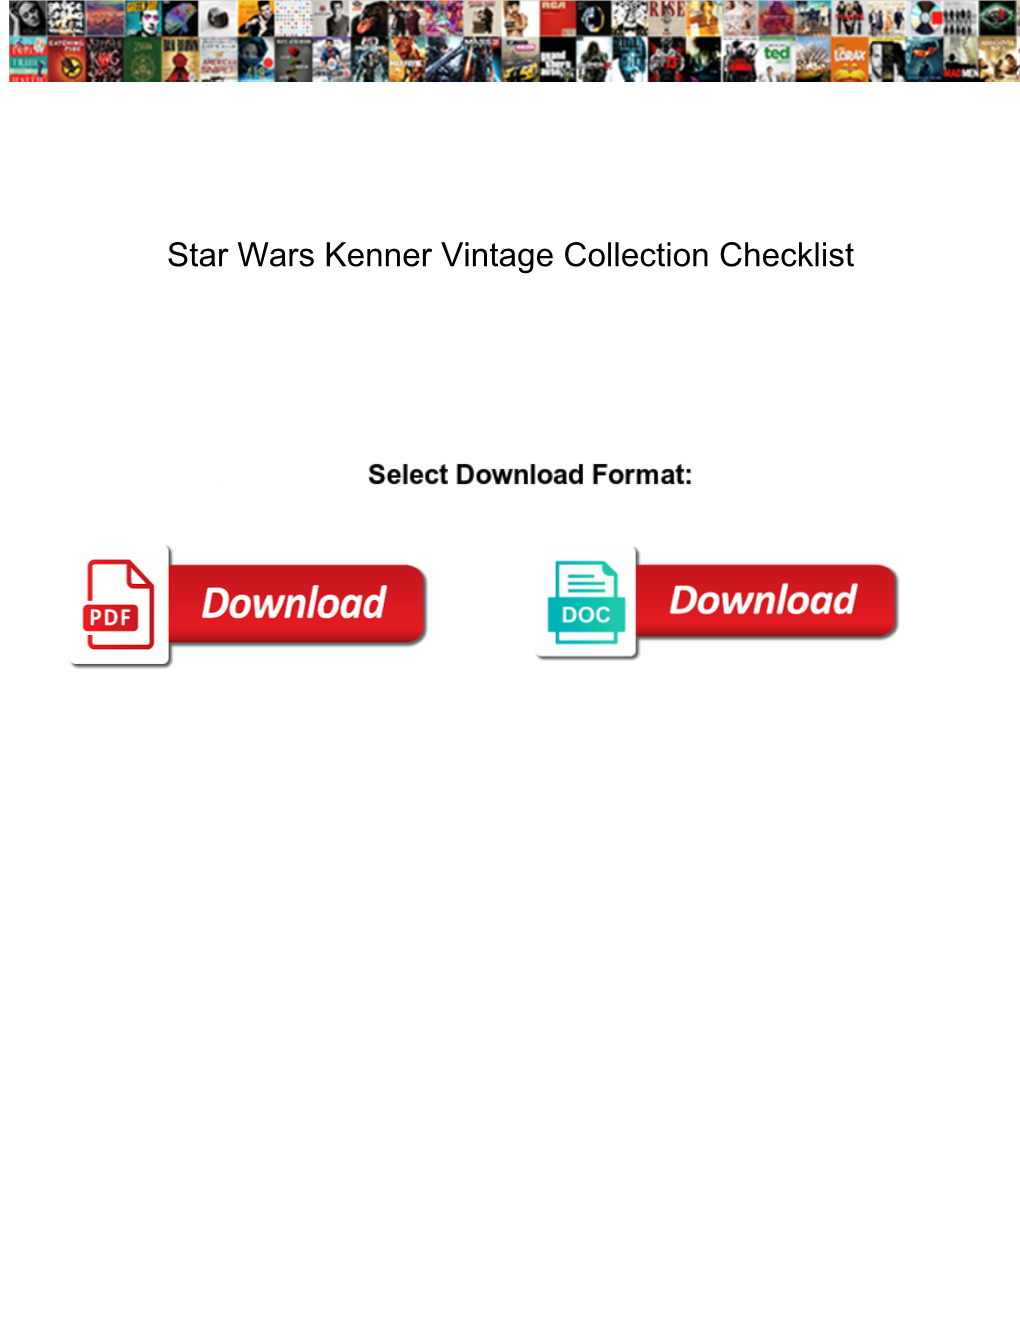 Star Wars Kenner Vintage Collection Checklist